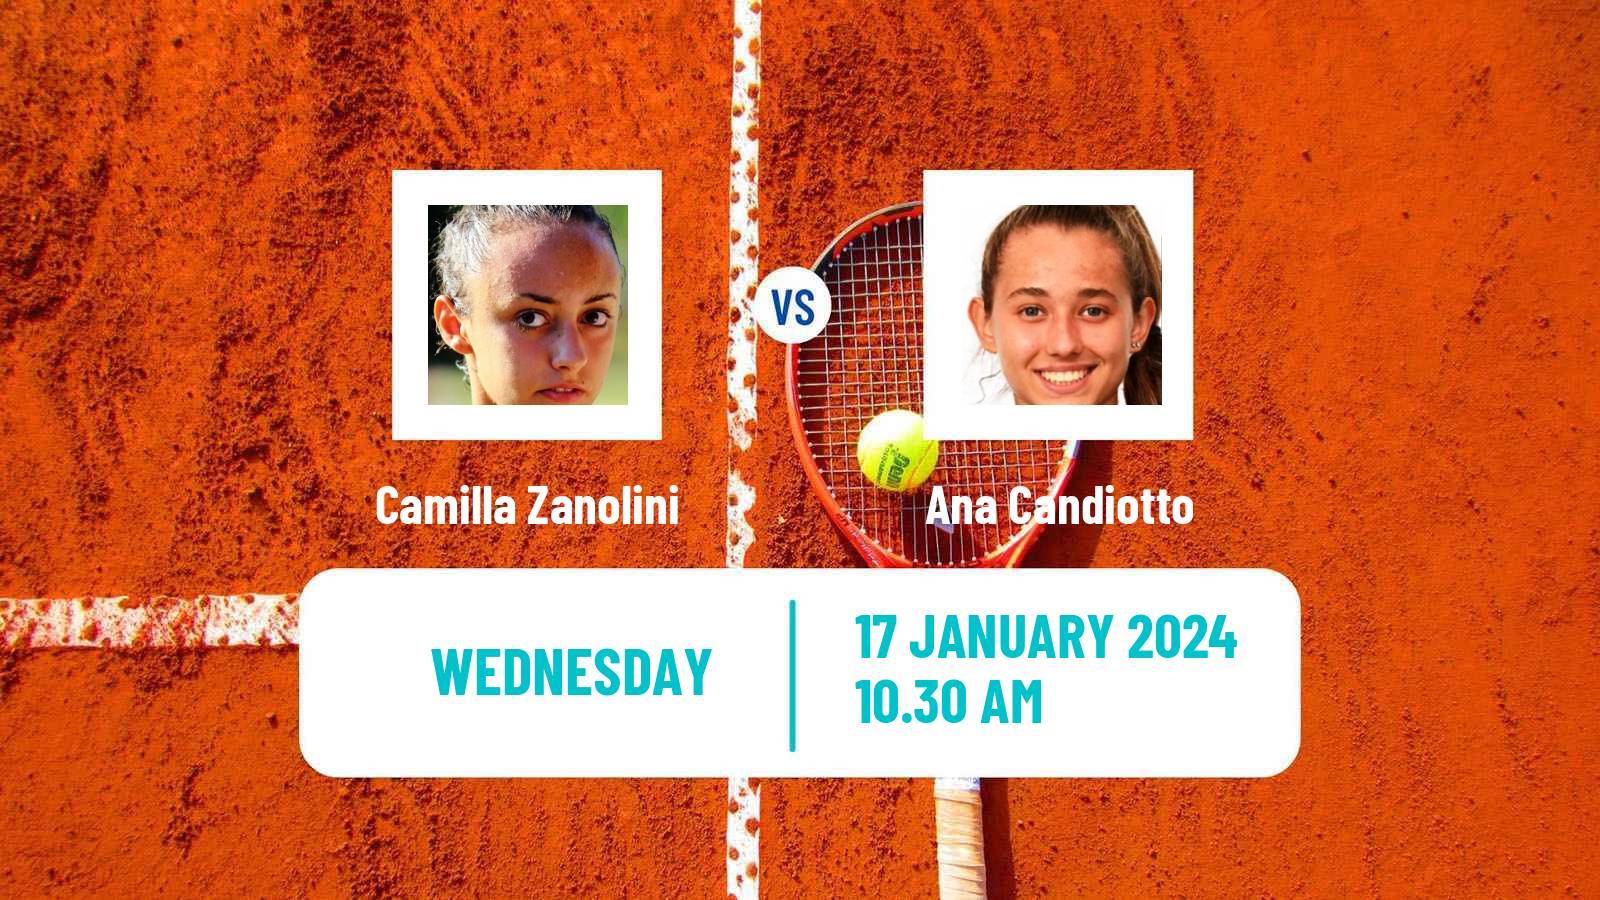 Tennis ITF W35 Buenos Aires Women Camilla Zanolini - Ana Candiotto